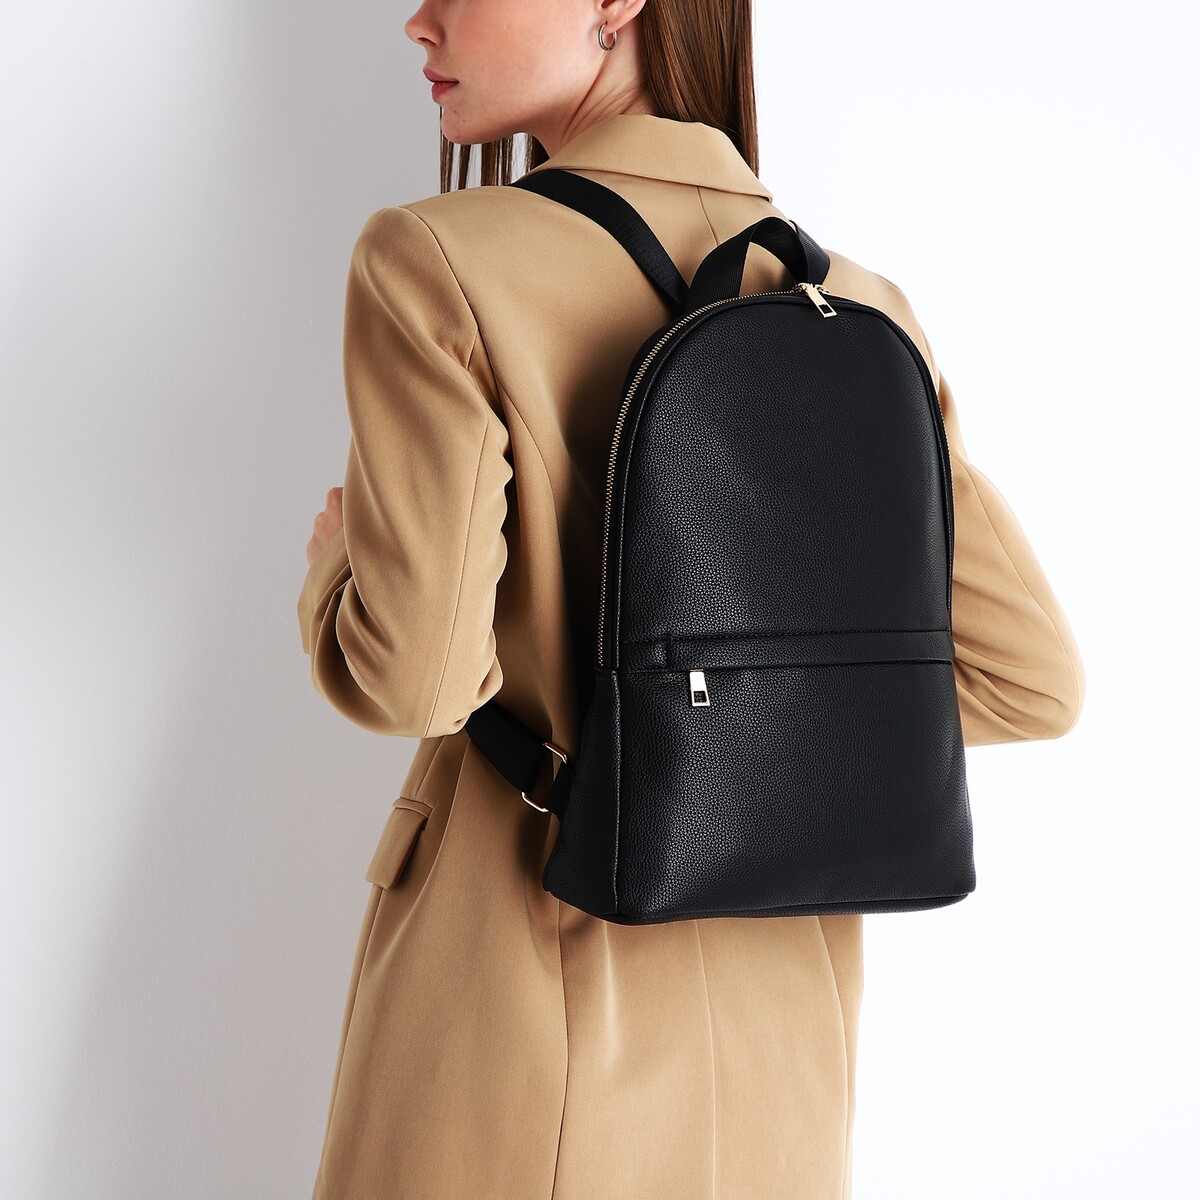 Рюкзак женский из искусственной кожи на молнии, 2 кармана, цвет черный рюкзак женский из искусственной кожи на молнии 2 кармана фуксия